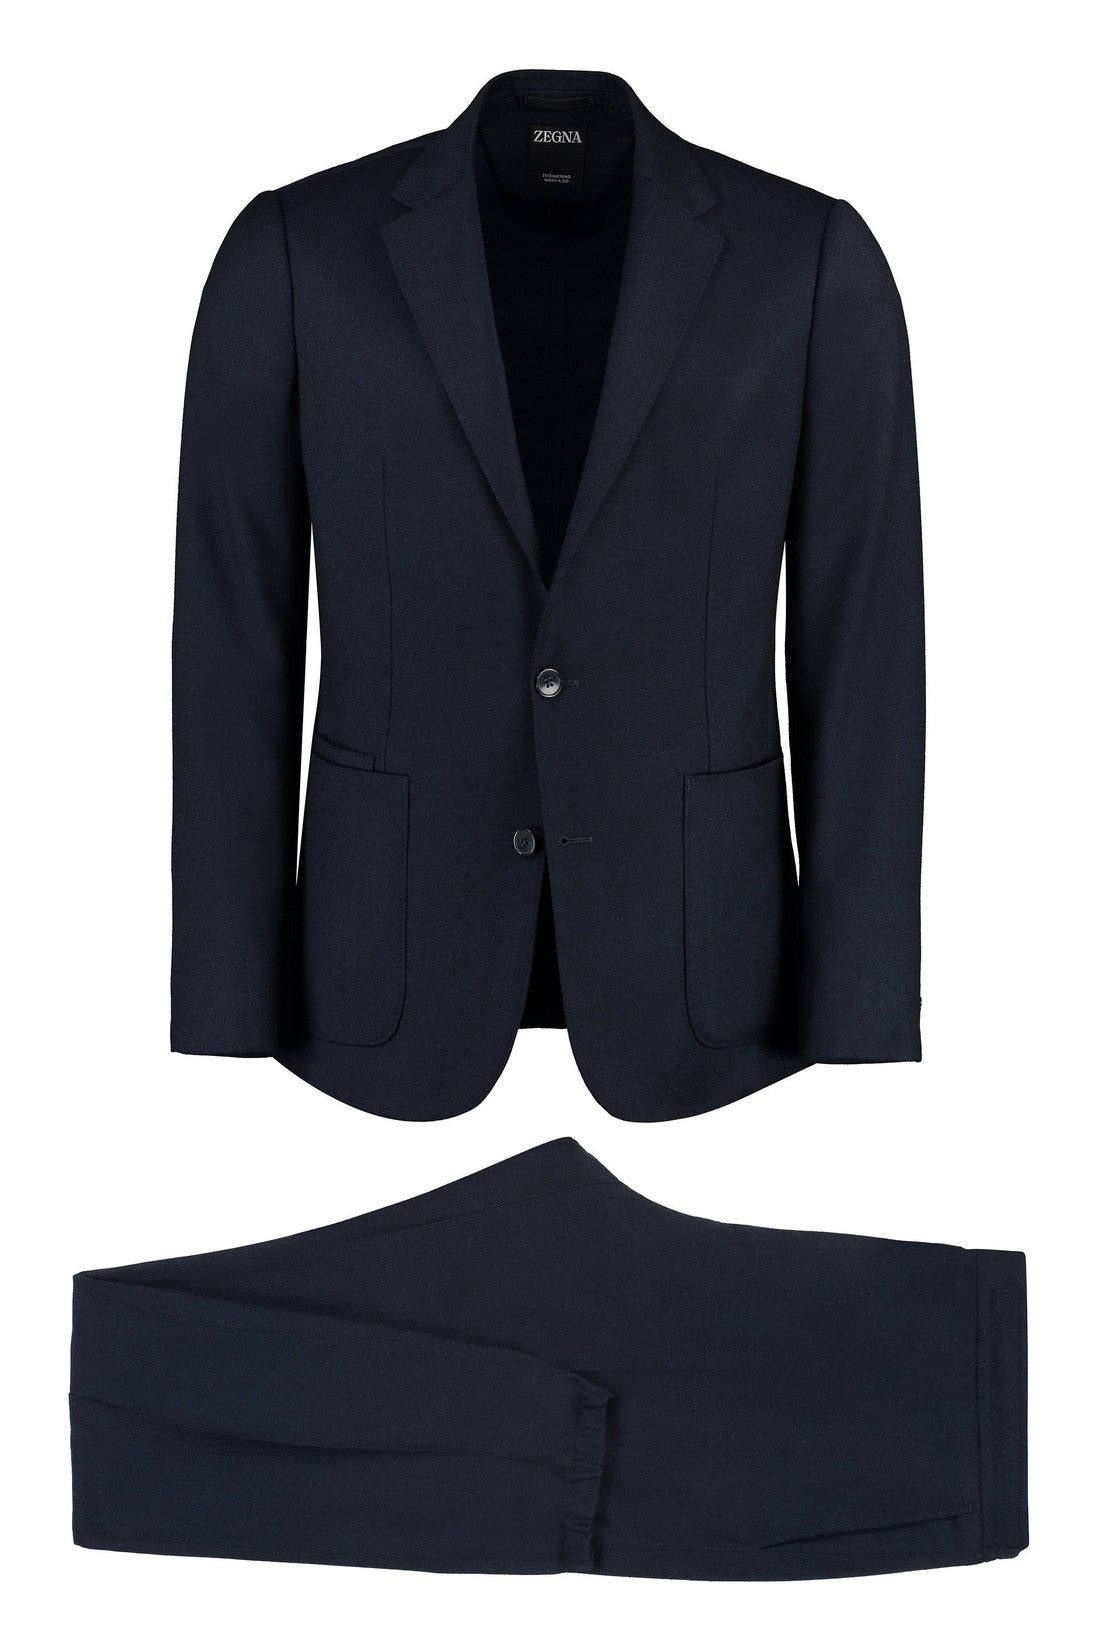 Zegna-OUTLET-SALE-Wool two-pieces suit-ARCHIVIST